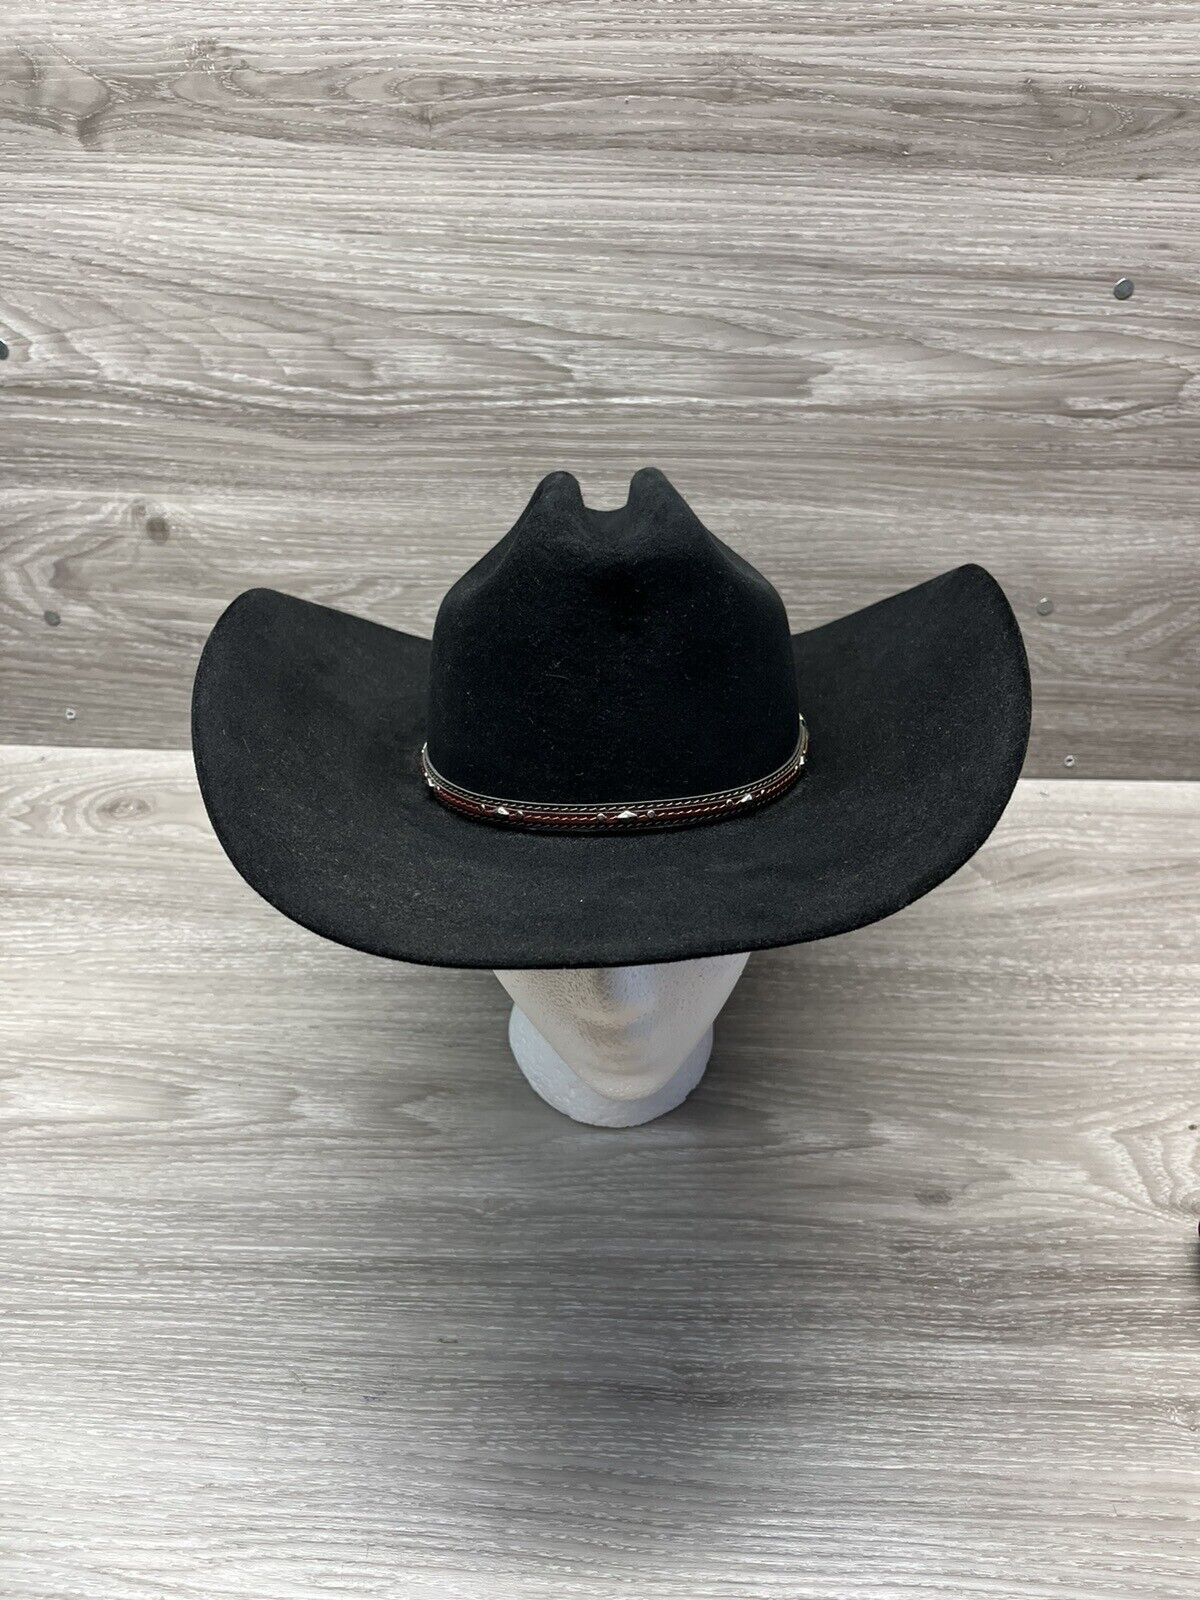 Resistol 4X Beaver Cowboy Hat Black Felt Long Oval Size 55/ 6-7/8